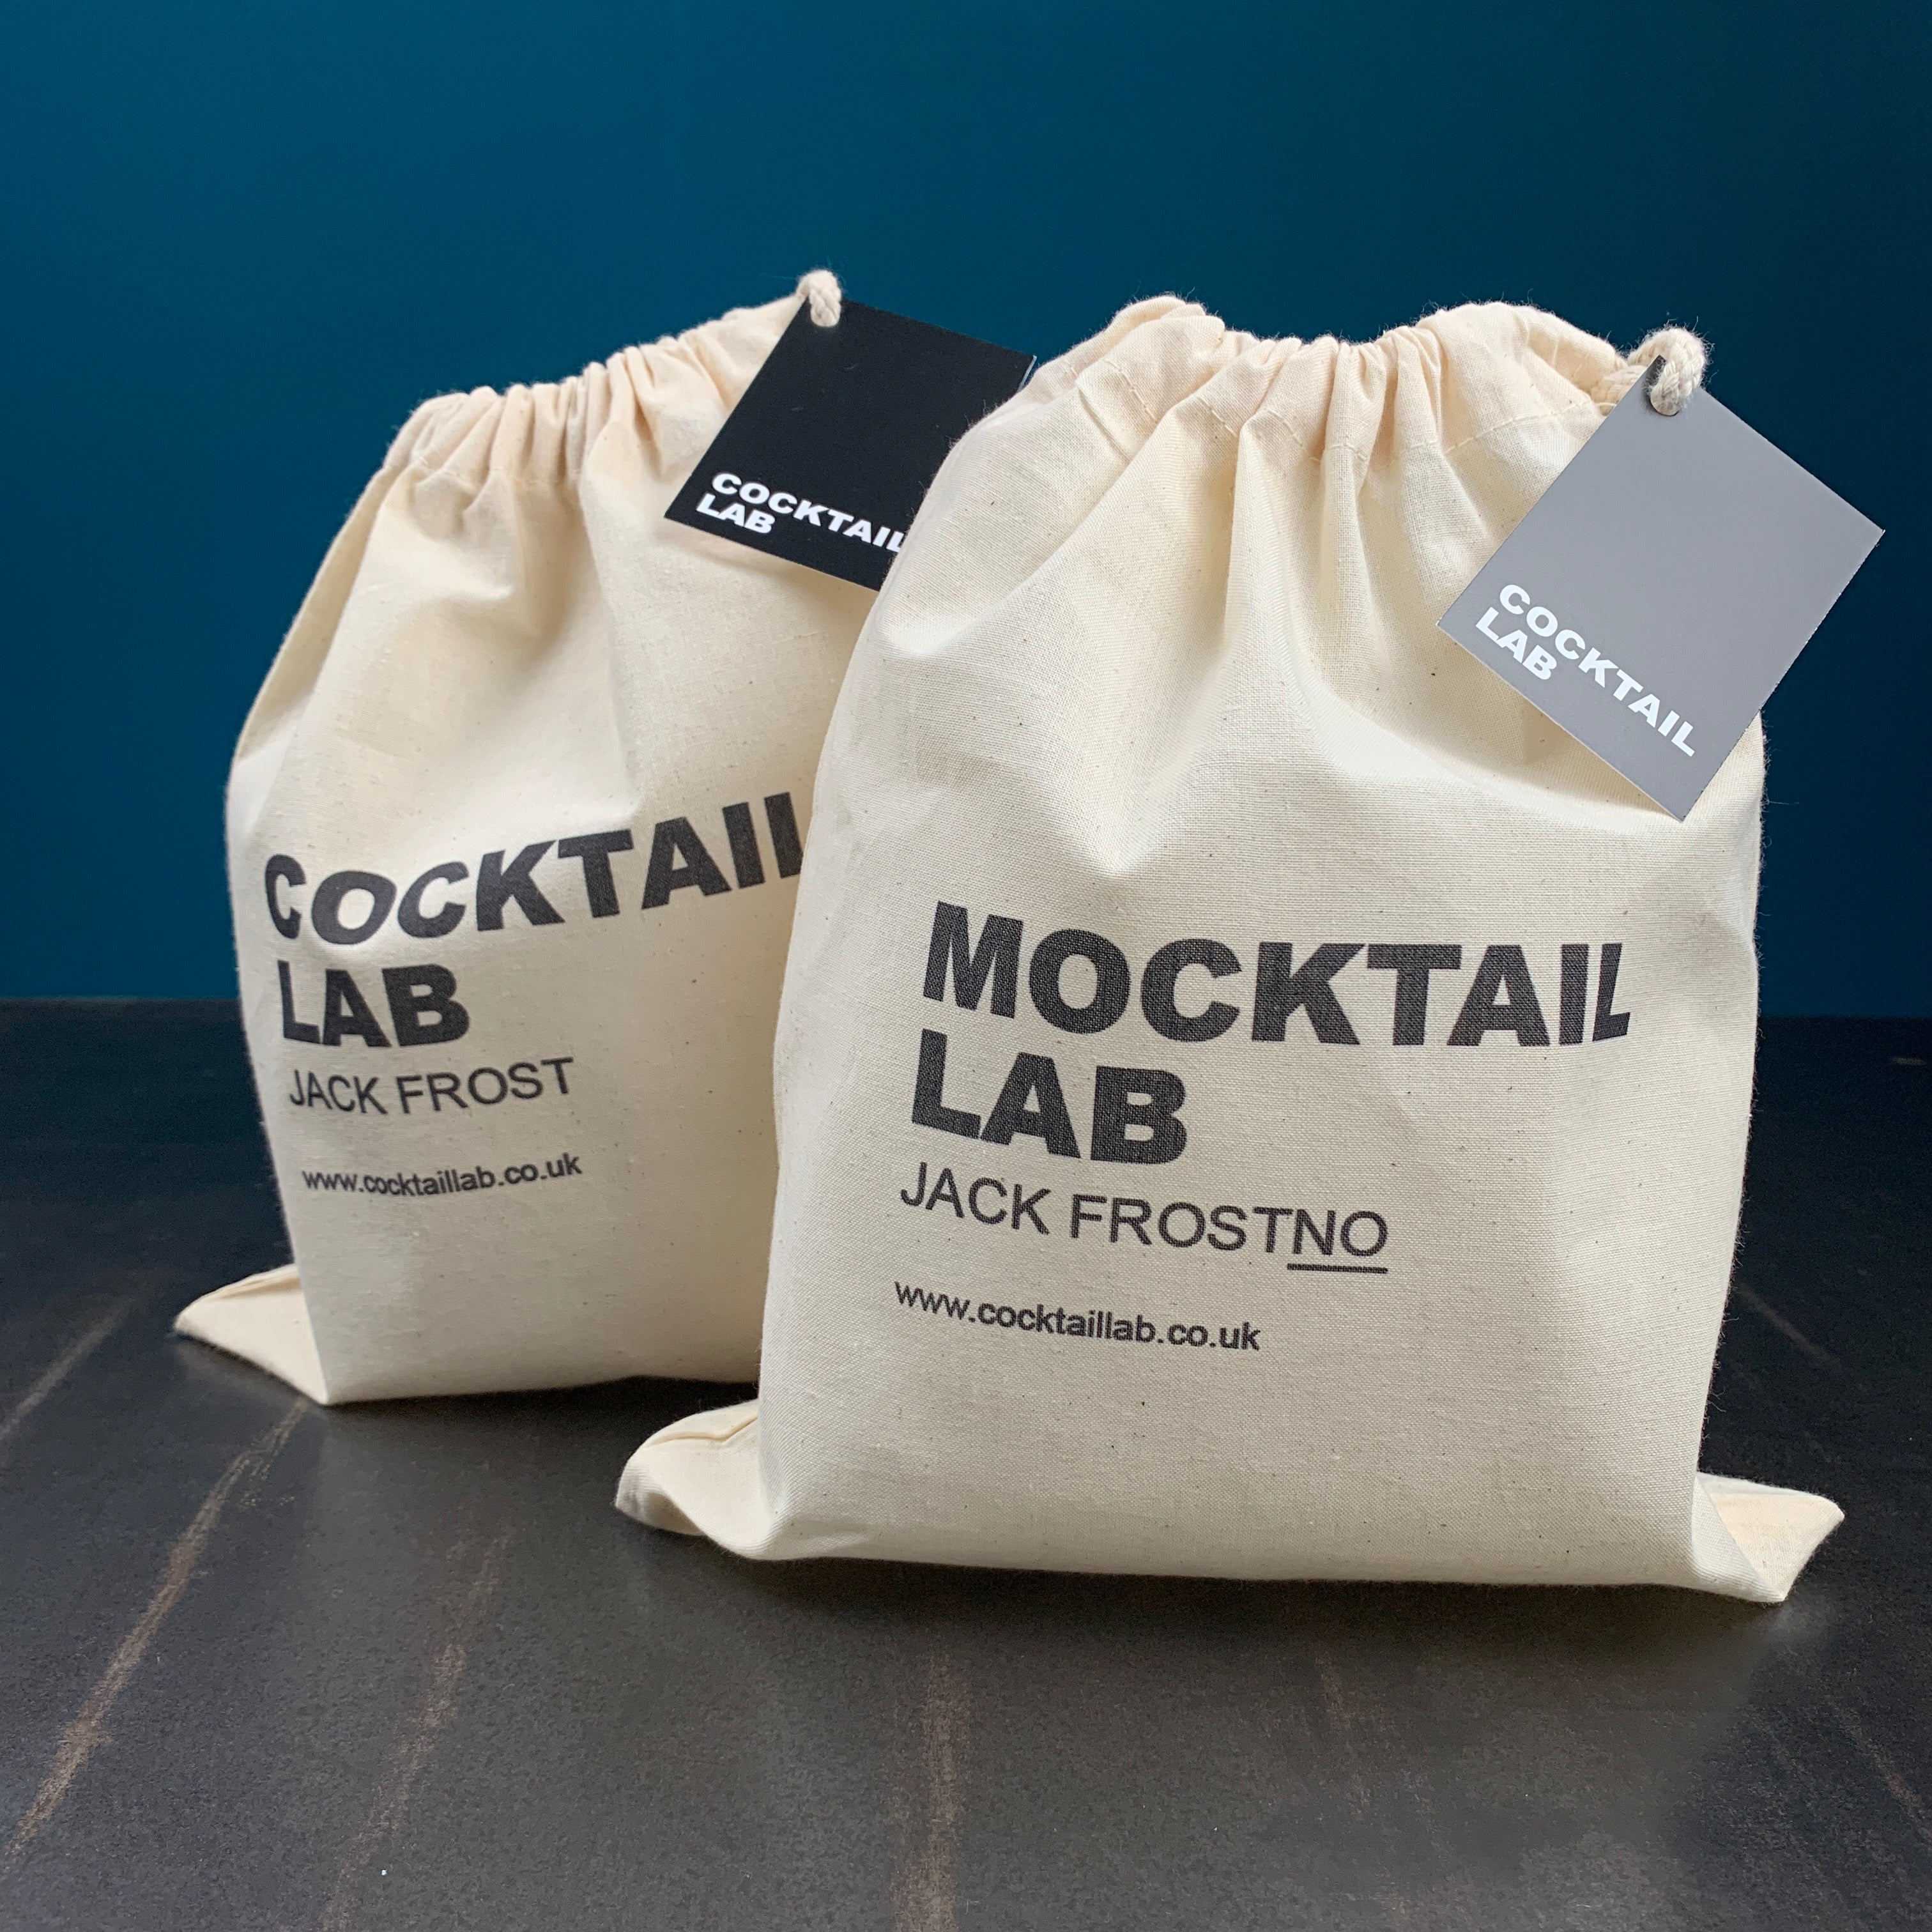 Jack Frost Cocktail Kit Gift Bag and Jack FrostNo Mocktail Bag